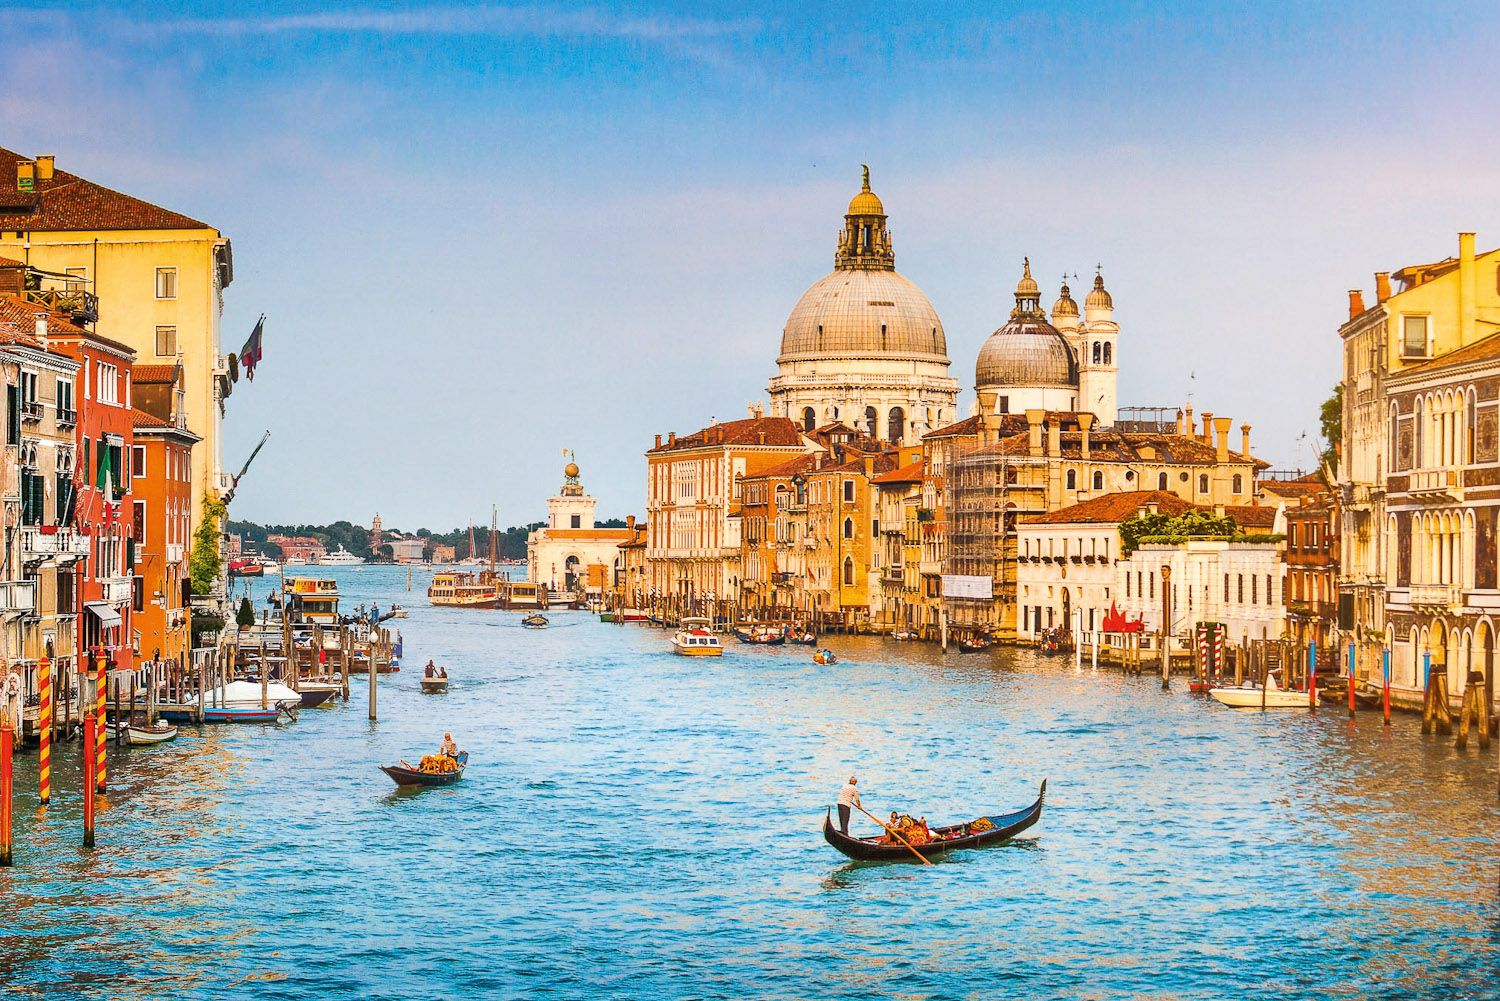 Du lịch Venice - Khám phá các điểm tham quan độc đáo